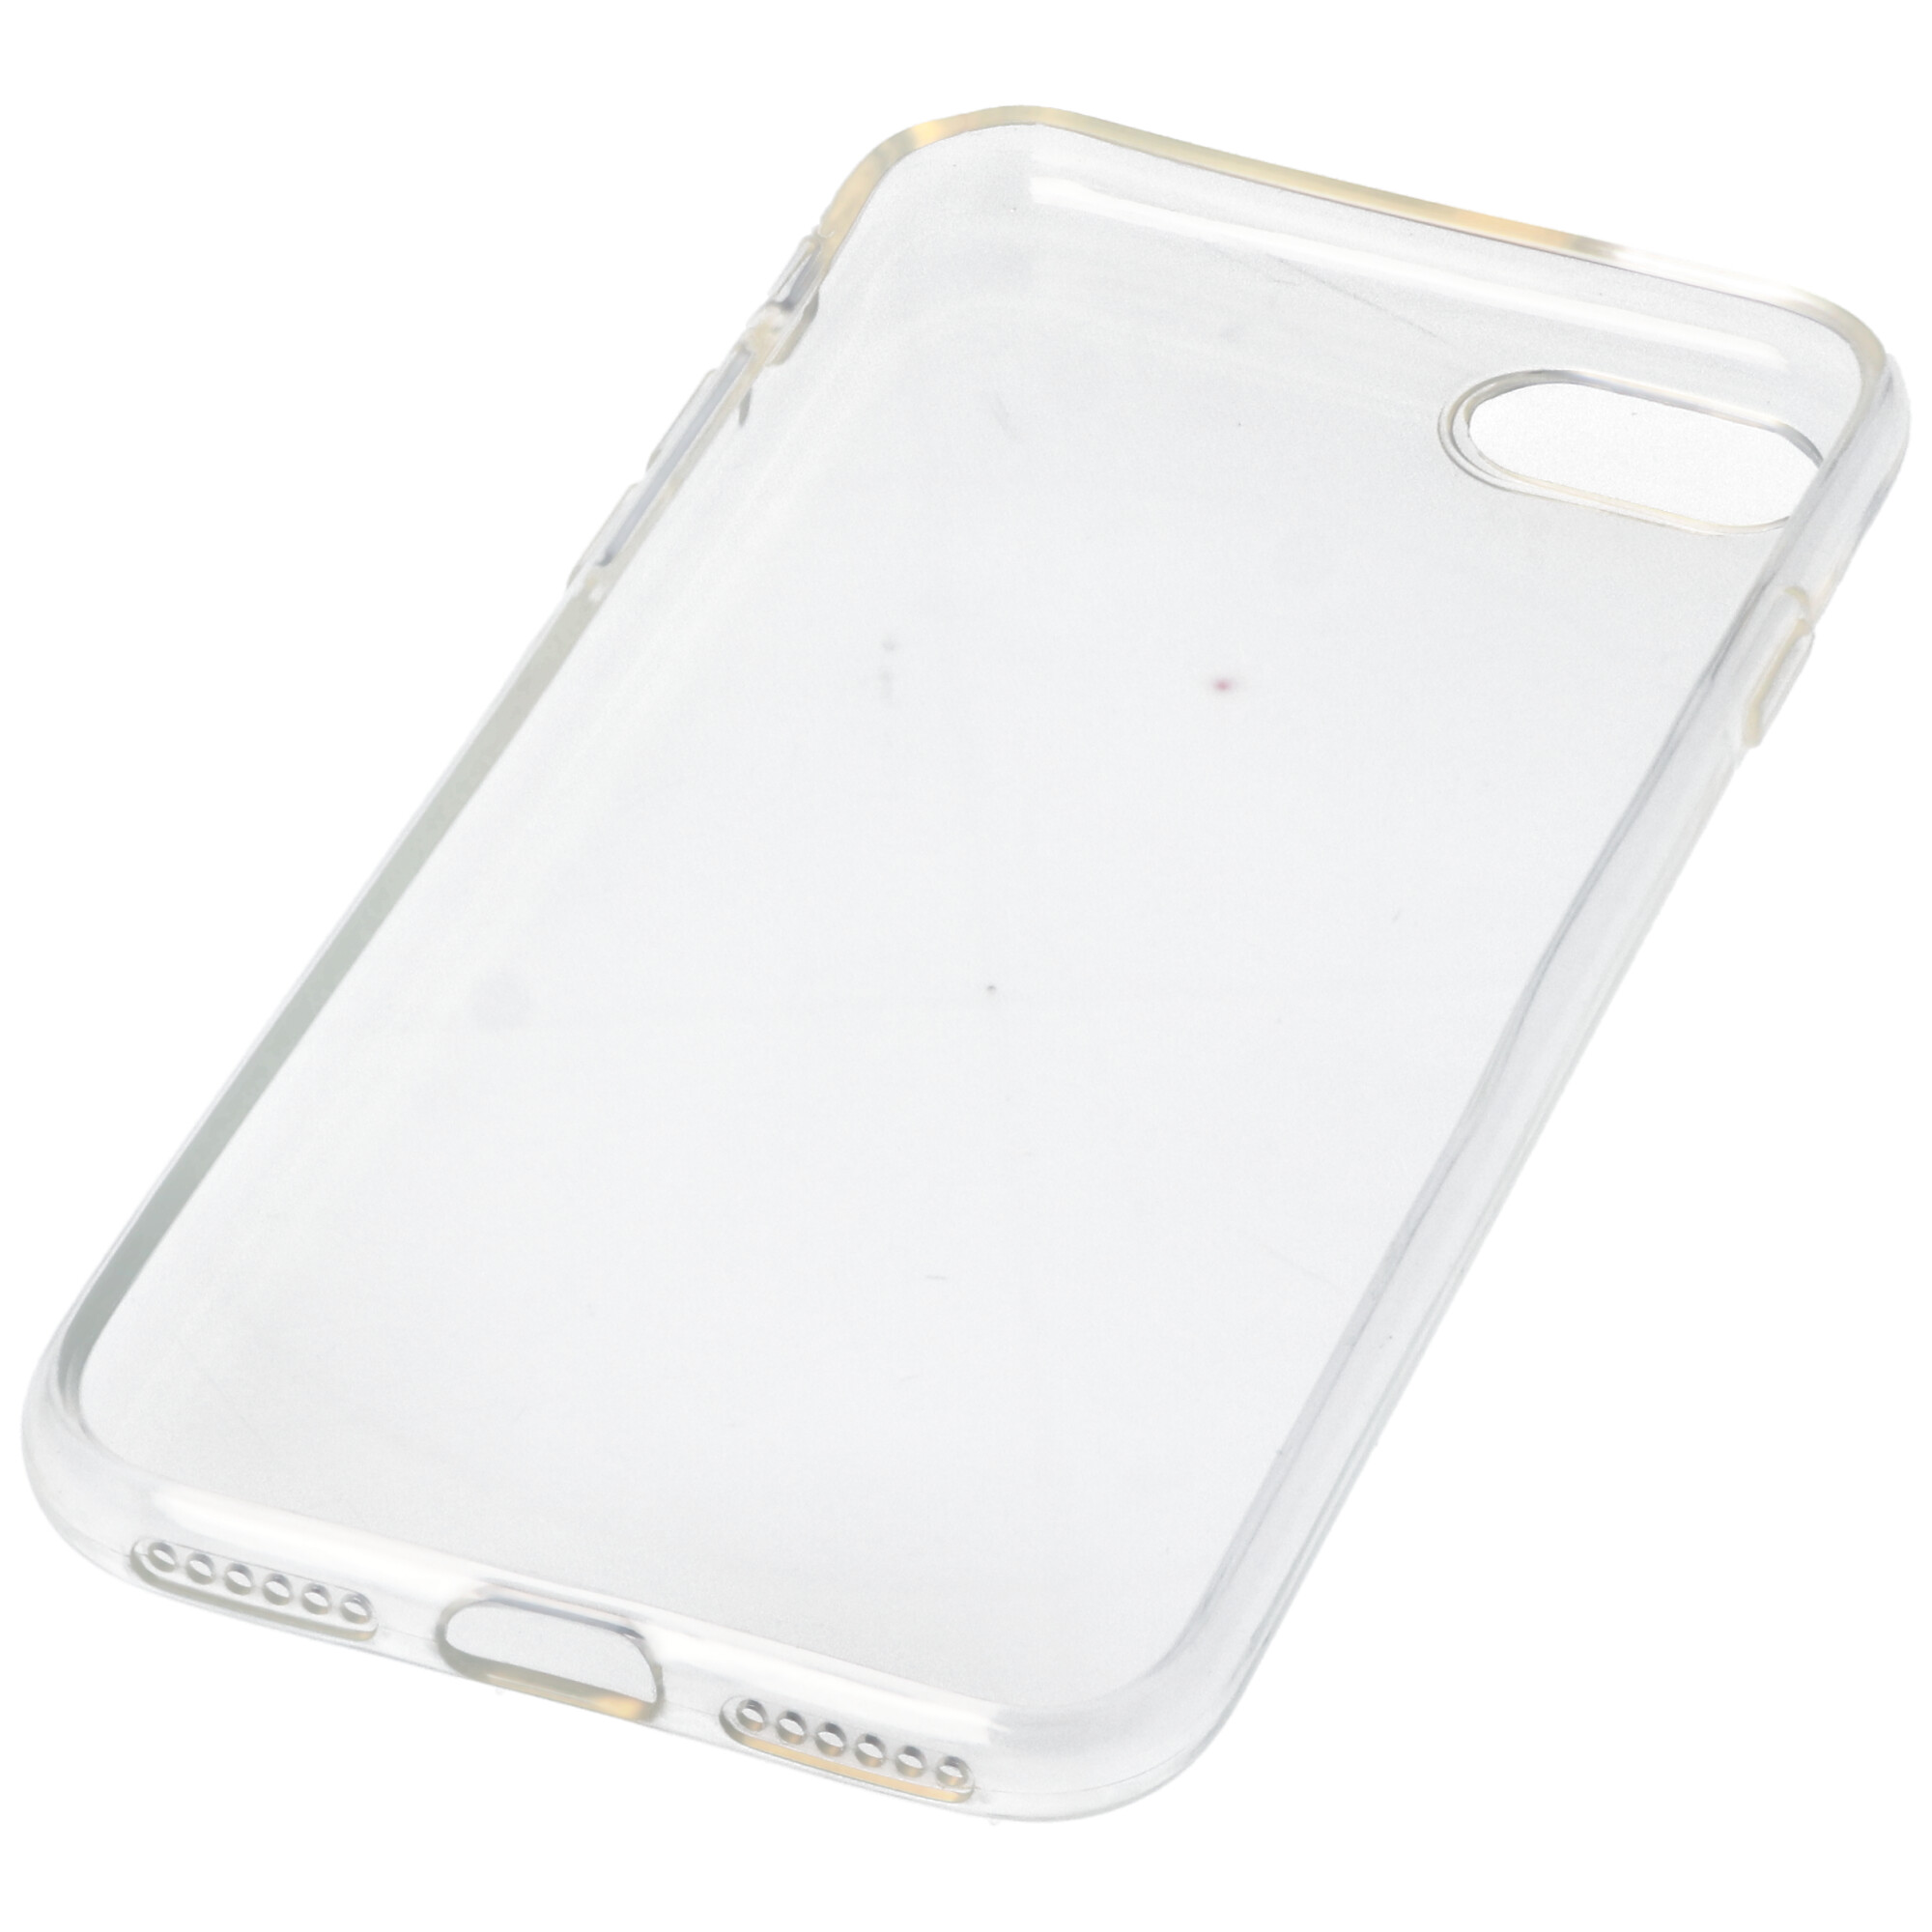 Hülle passend für Apple iPhone SE 2020 - transparente Schutzhülle, Anti-Gelb Luftkissen Fallschutz Silikon Handyhülle robustes TPU Case